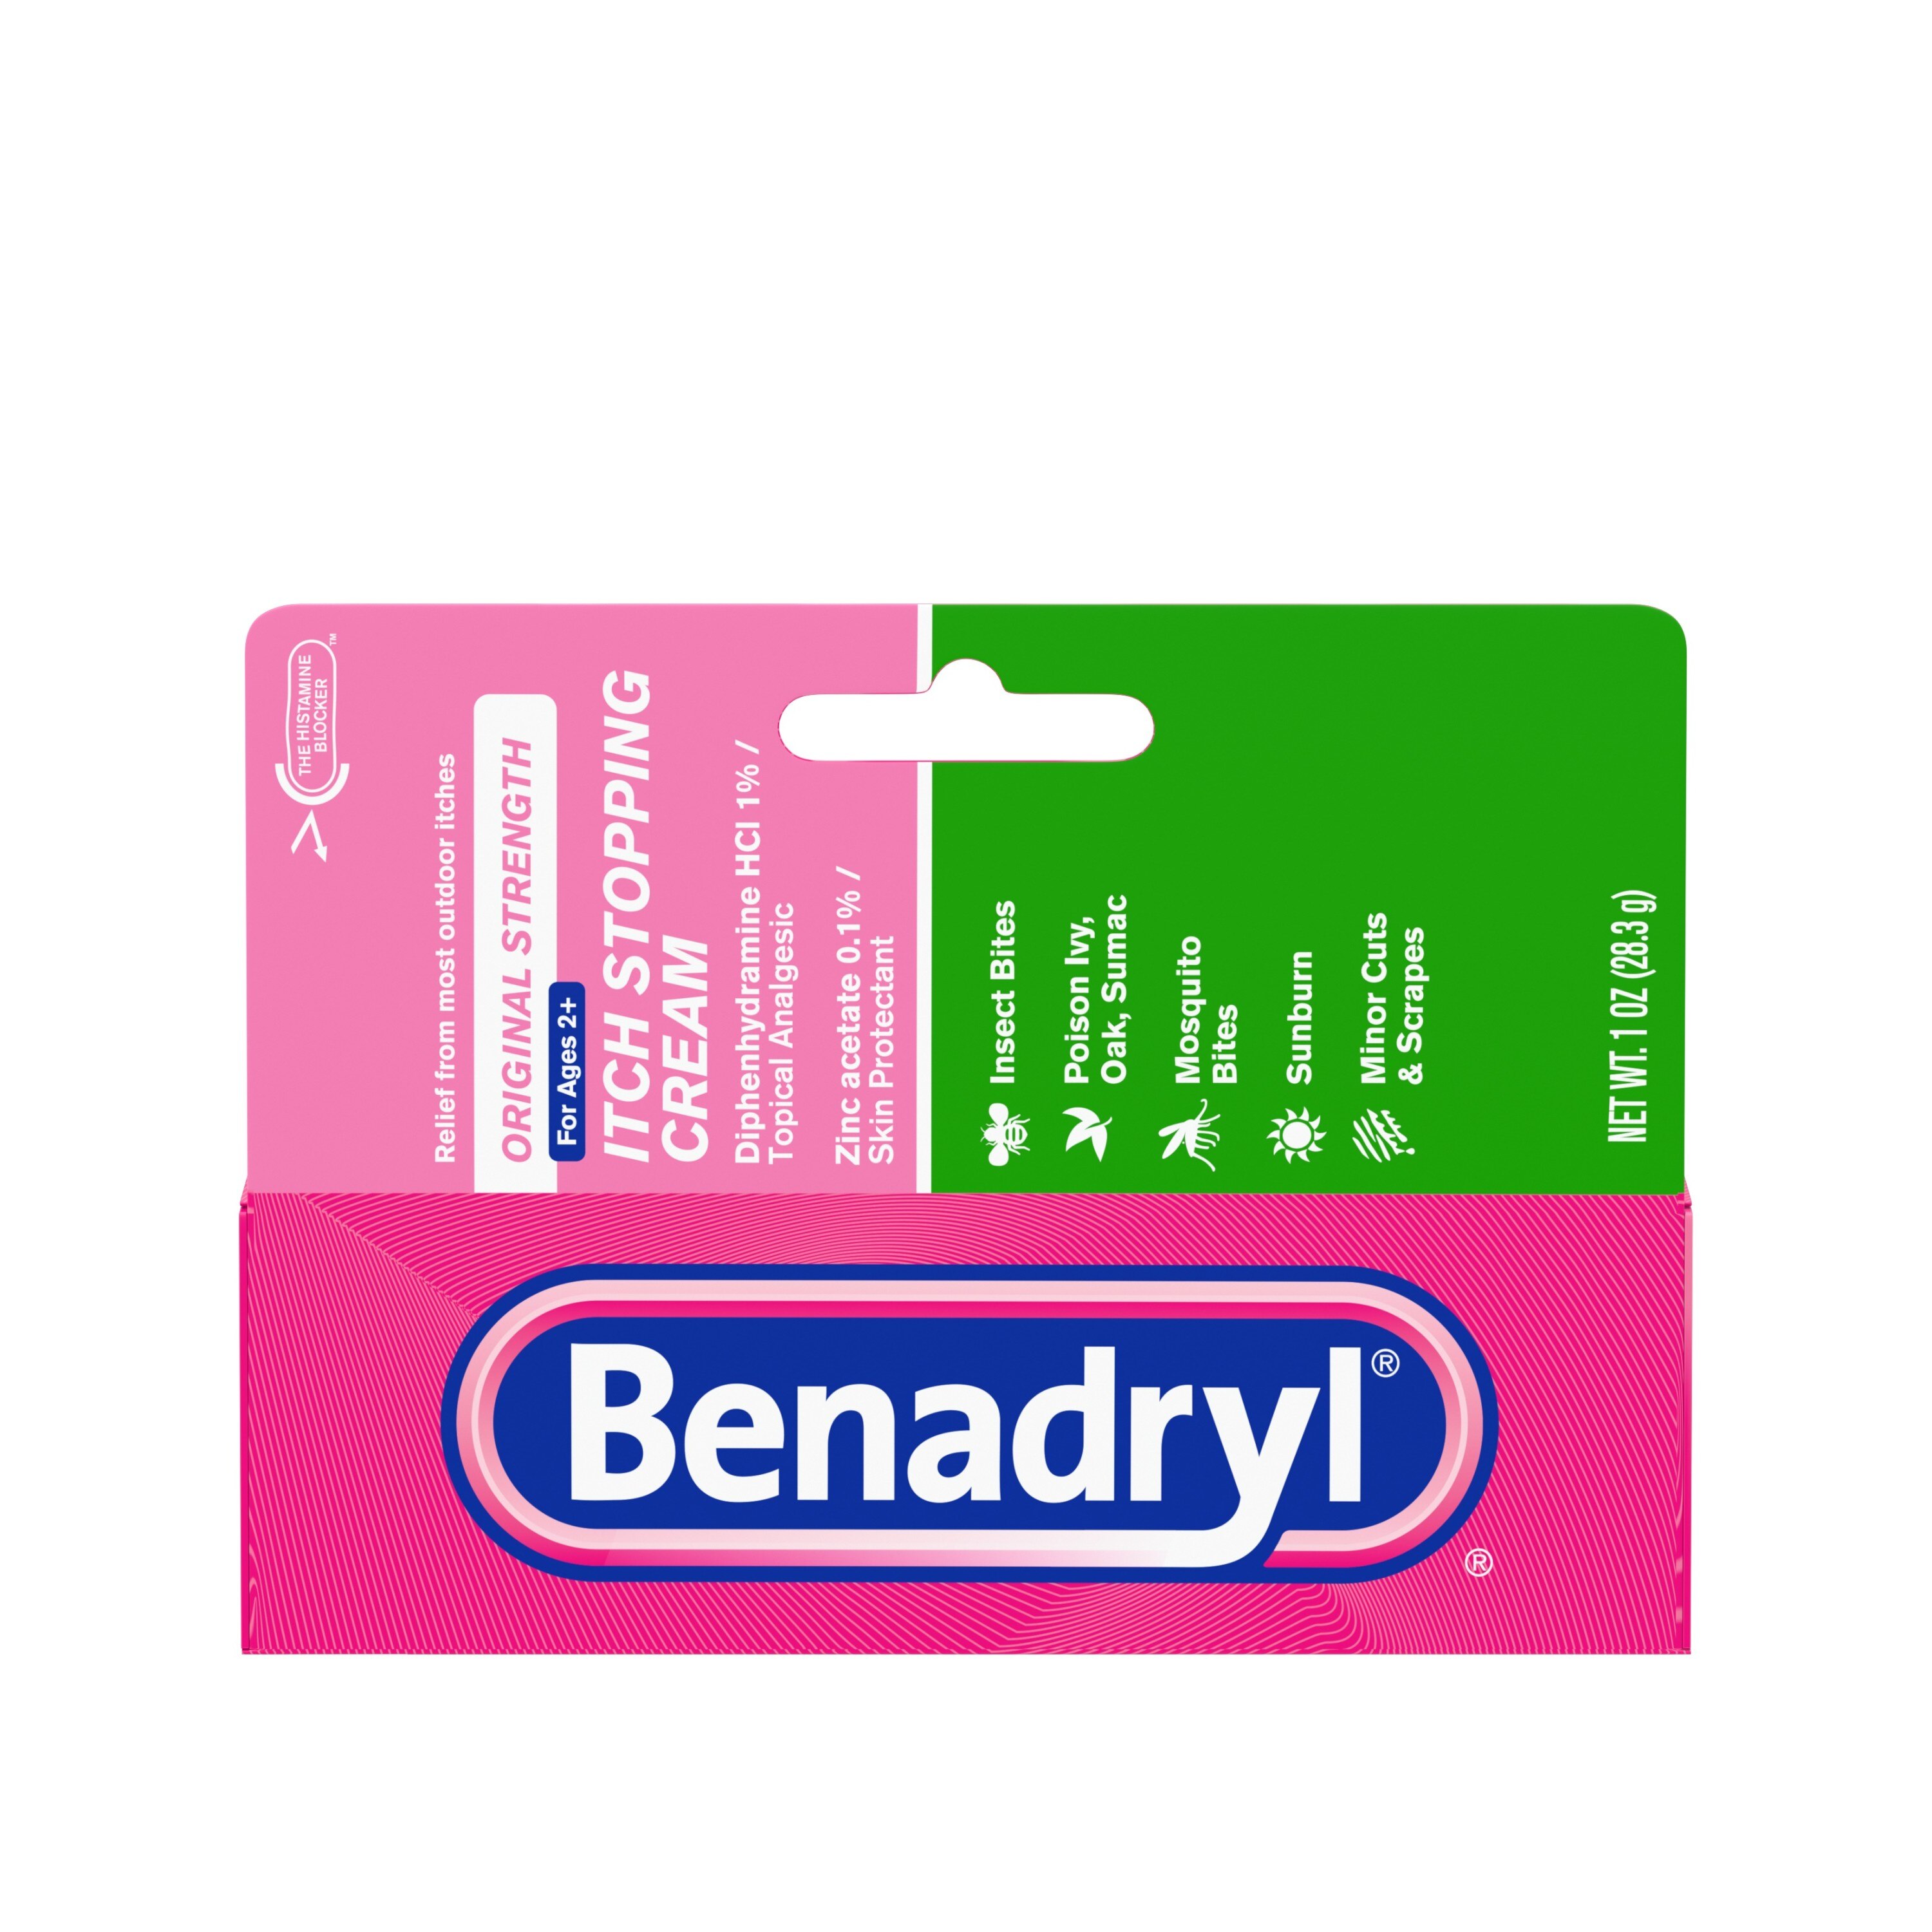 Benadryl Original Strength Itch Relief Cream, Topical Analgesic, 1 Oz , CVS